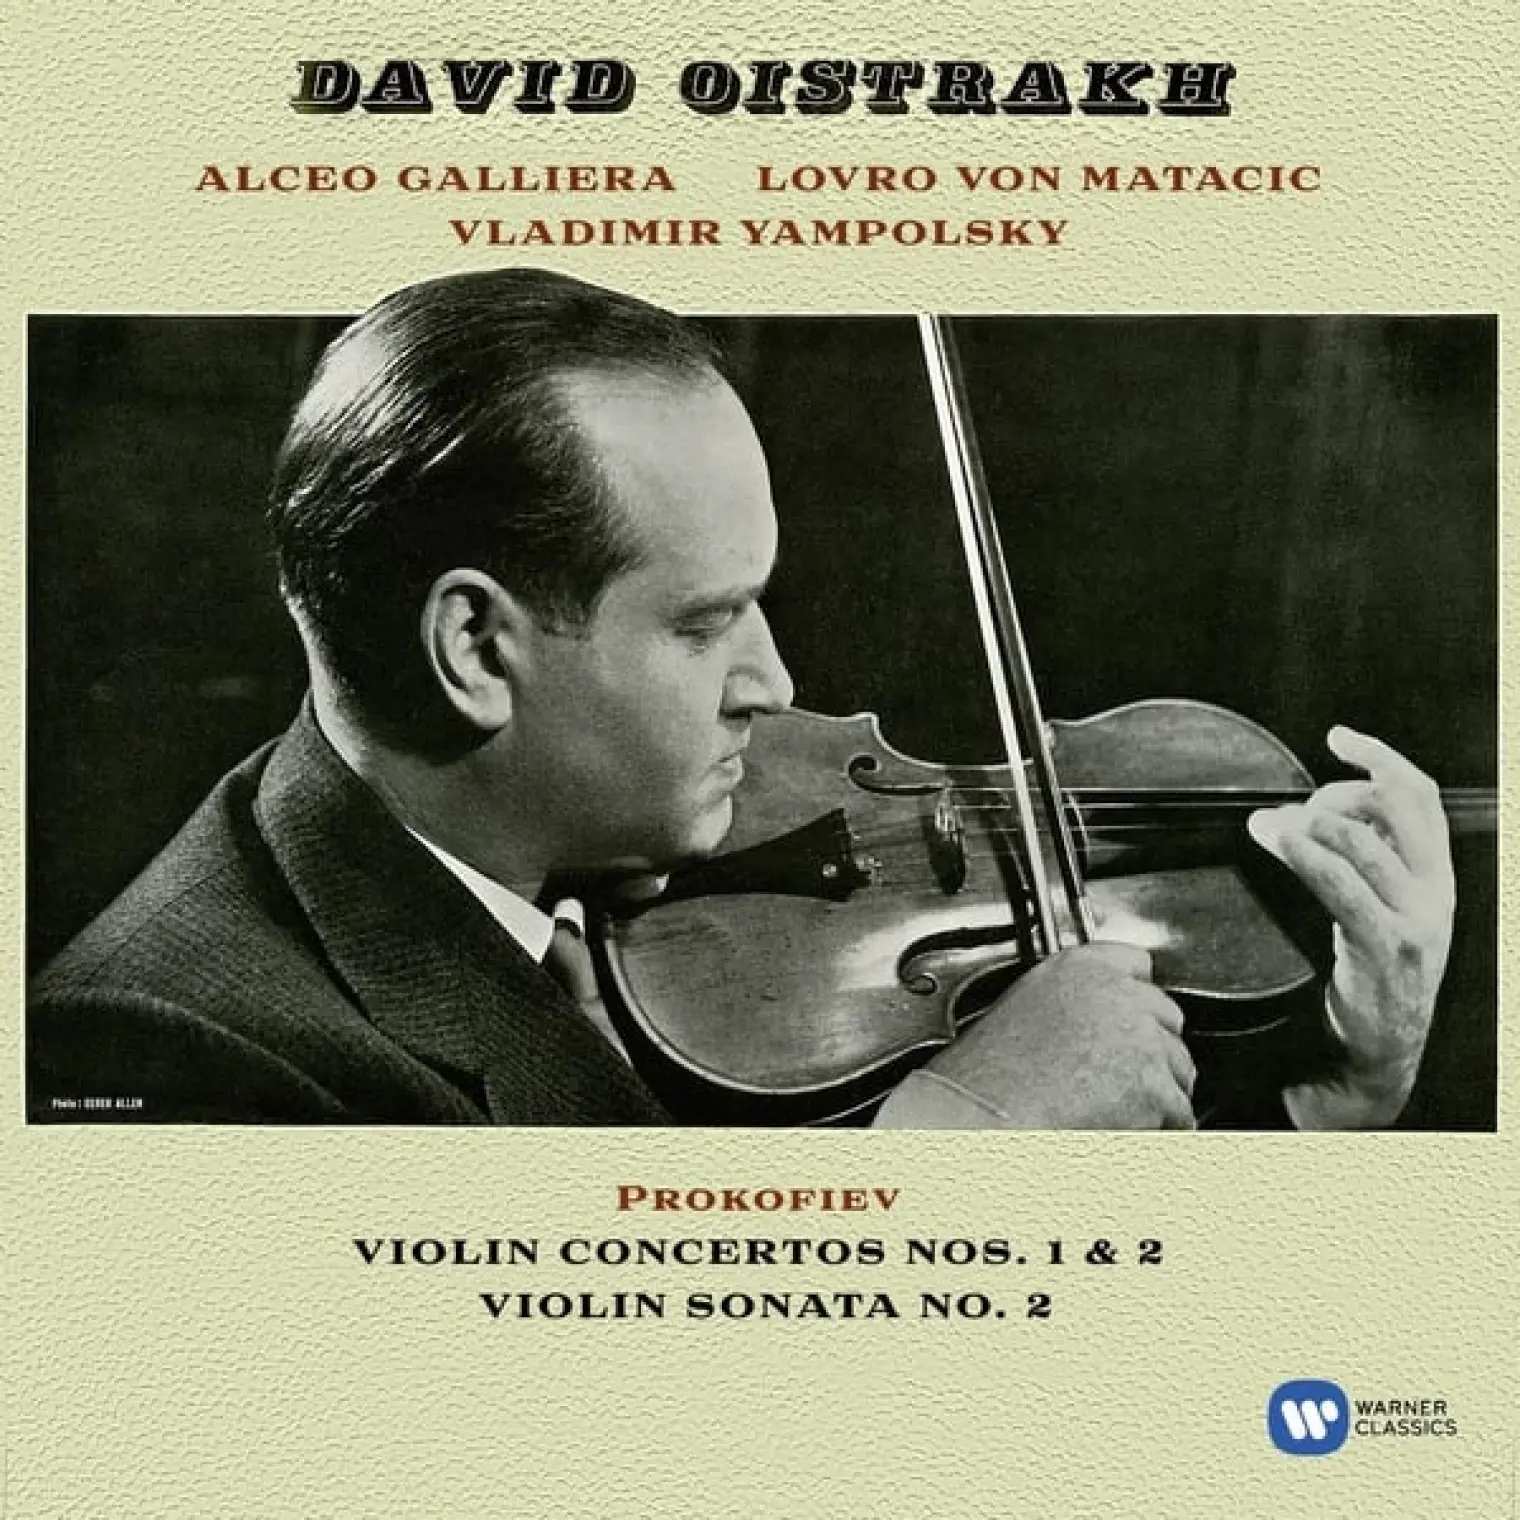 Prokofiev: Violin Concertos Nos. 1 & 2 - Violin Sonata No. 2 -  David Oistrakh 